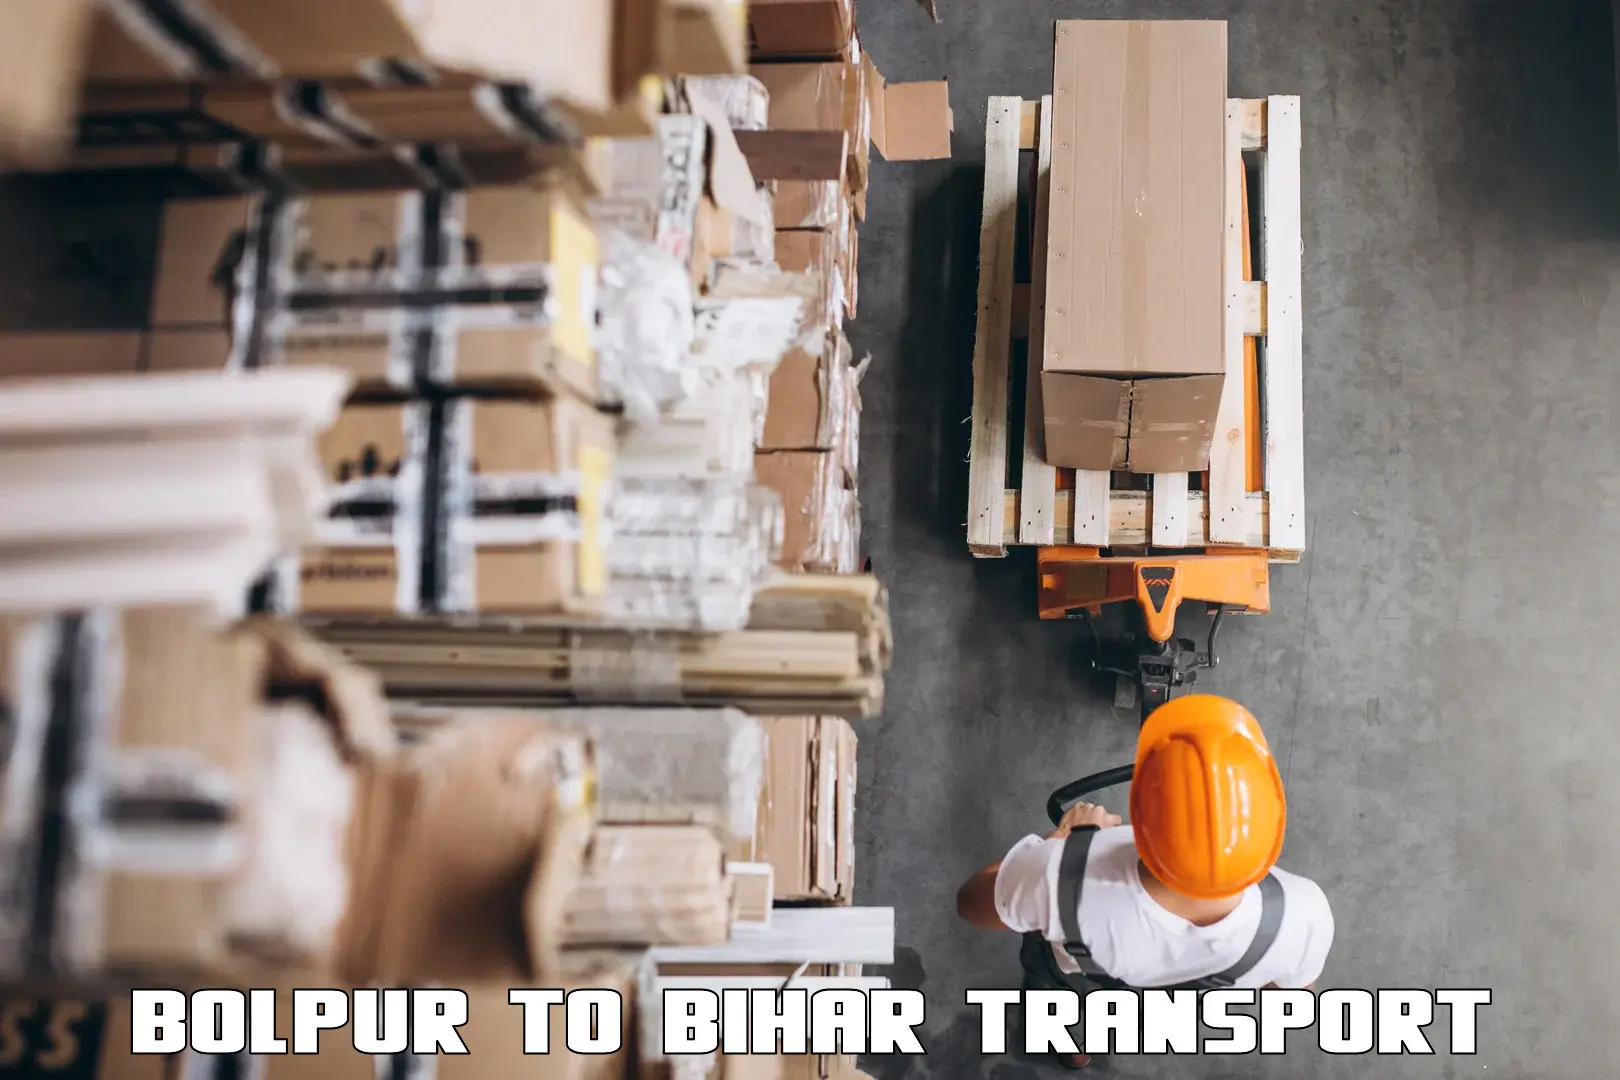 Bike shipping service in Bolpur to Bihar